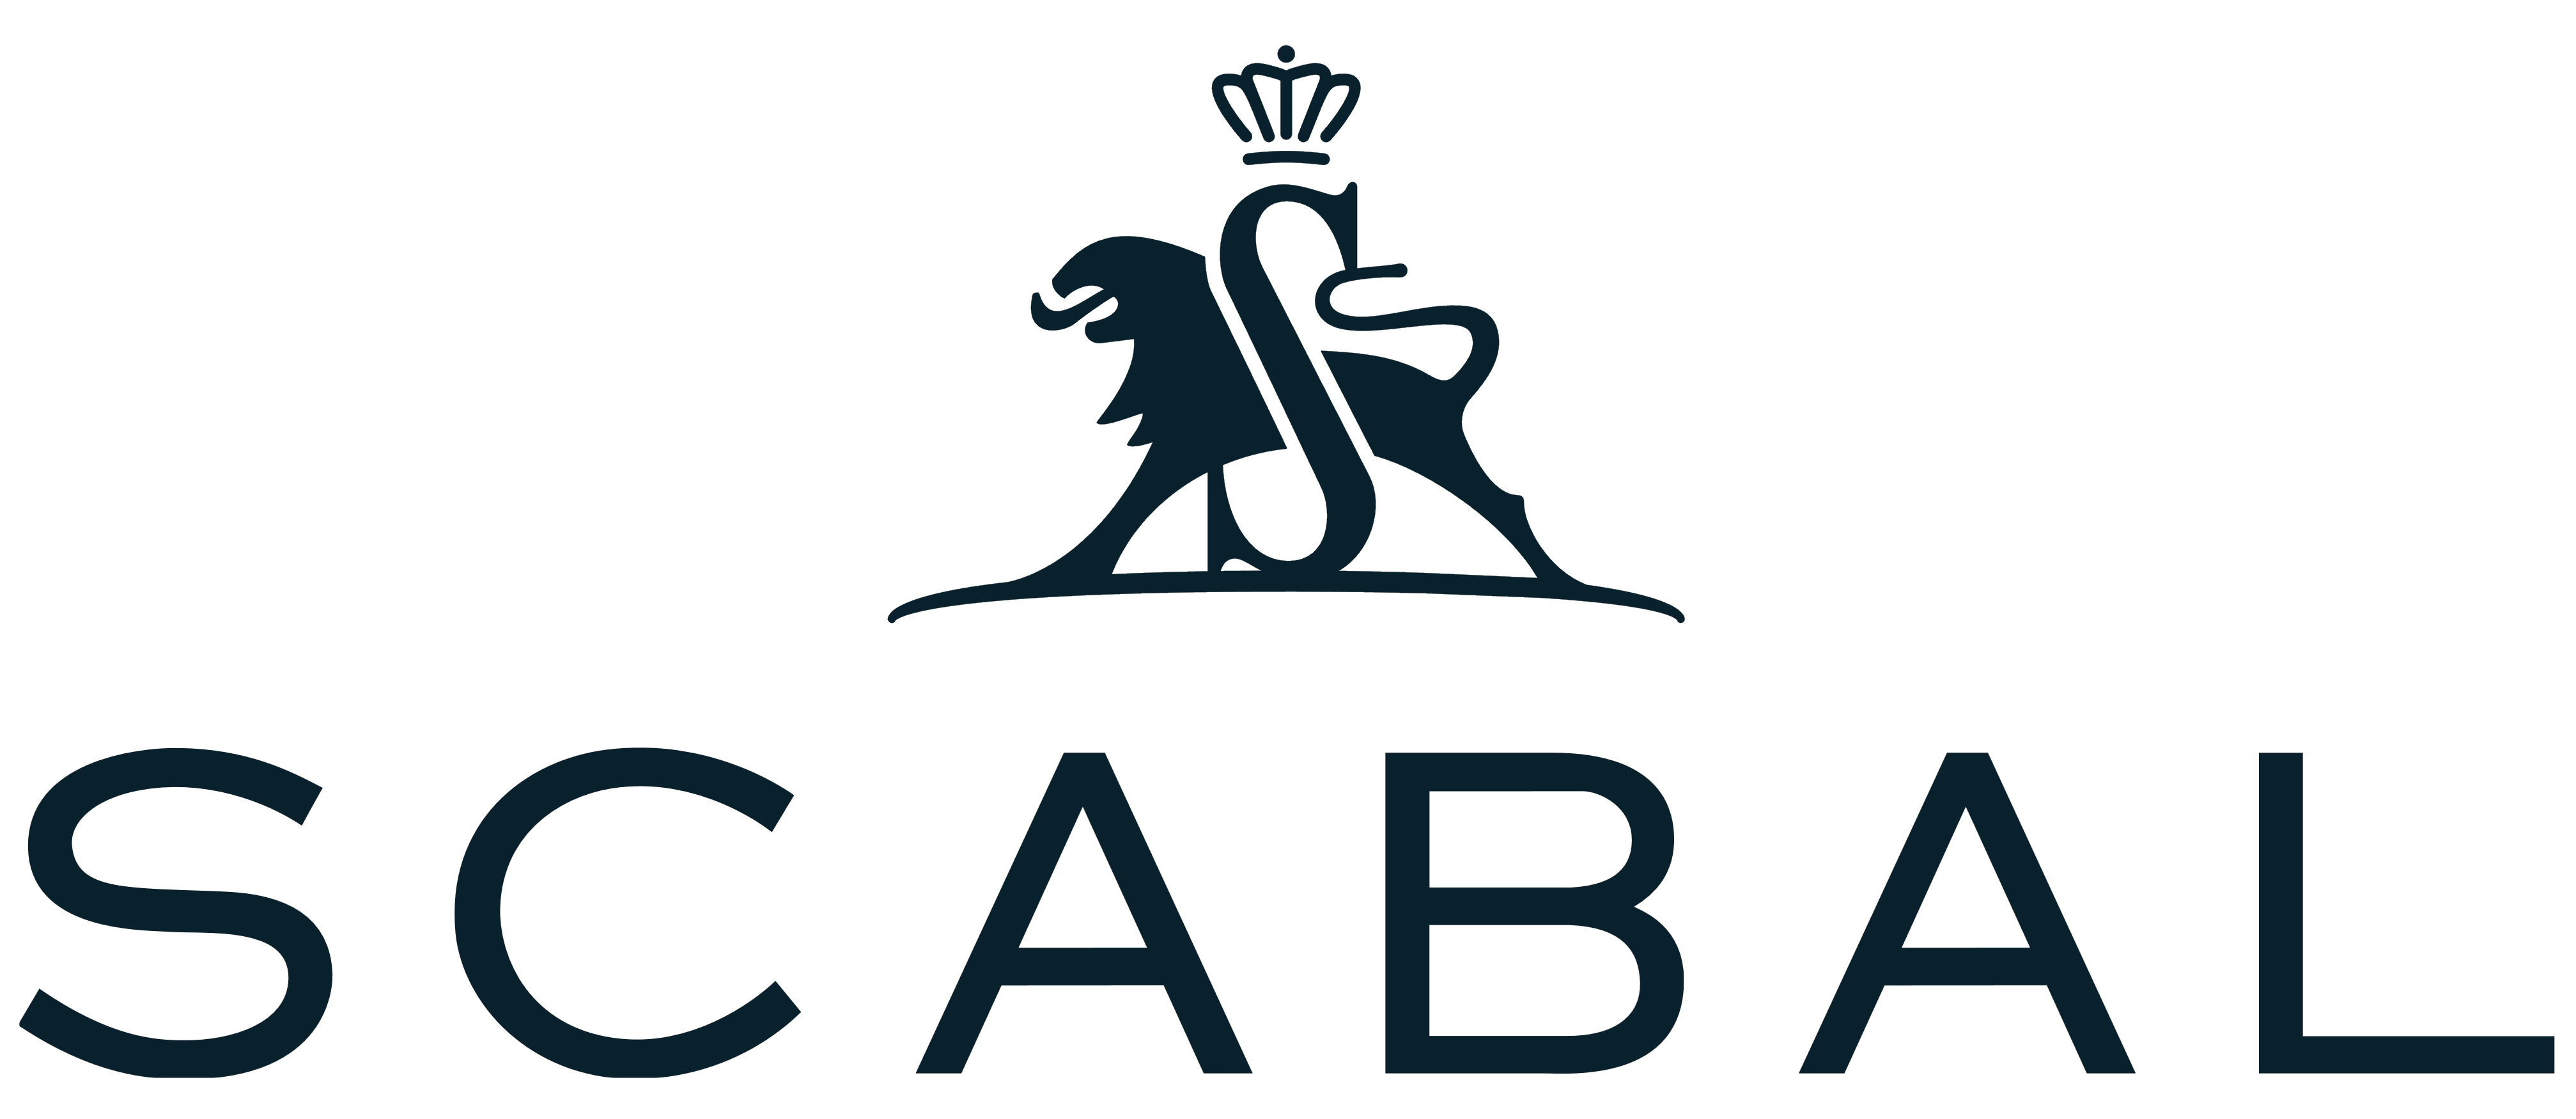 Scabal logo, logotype